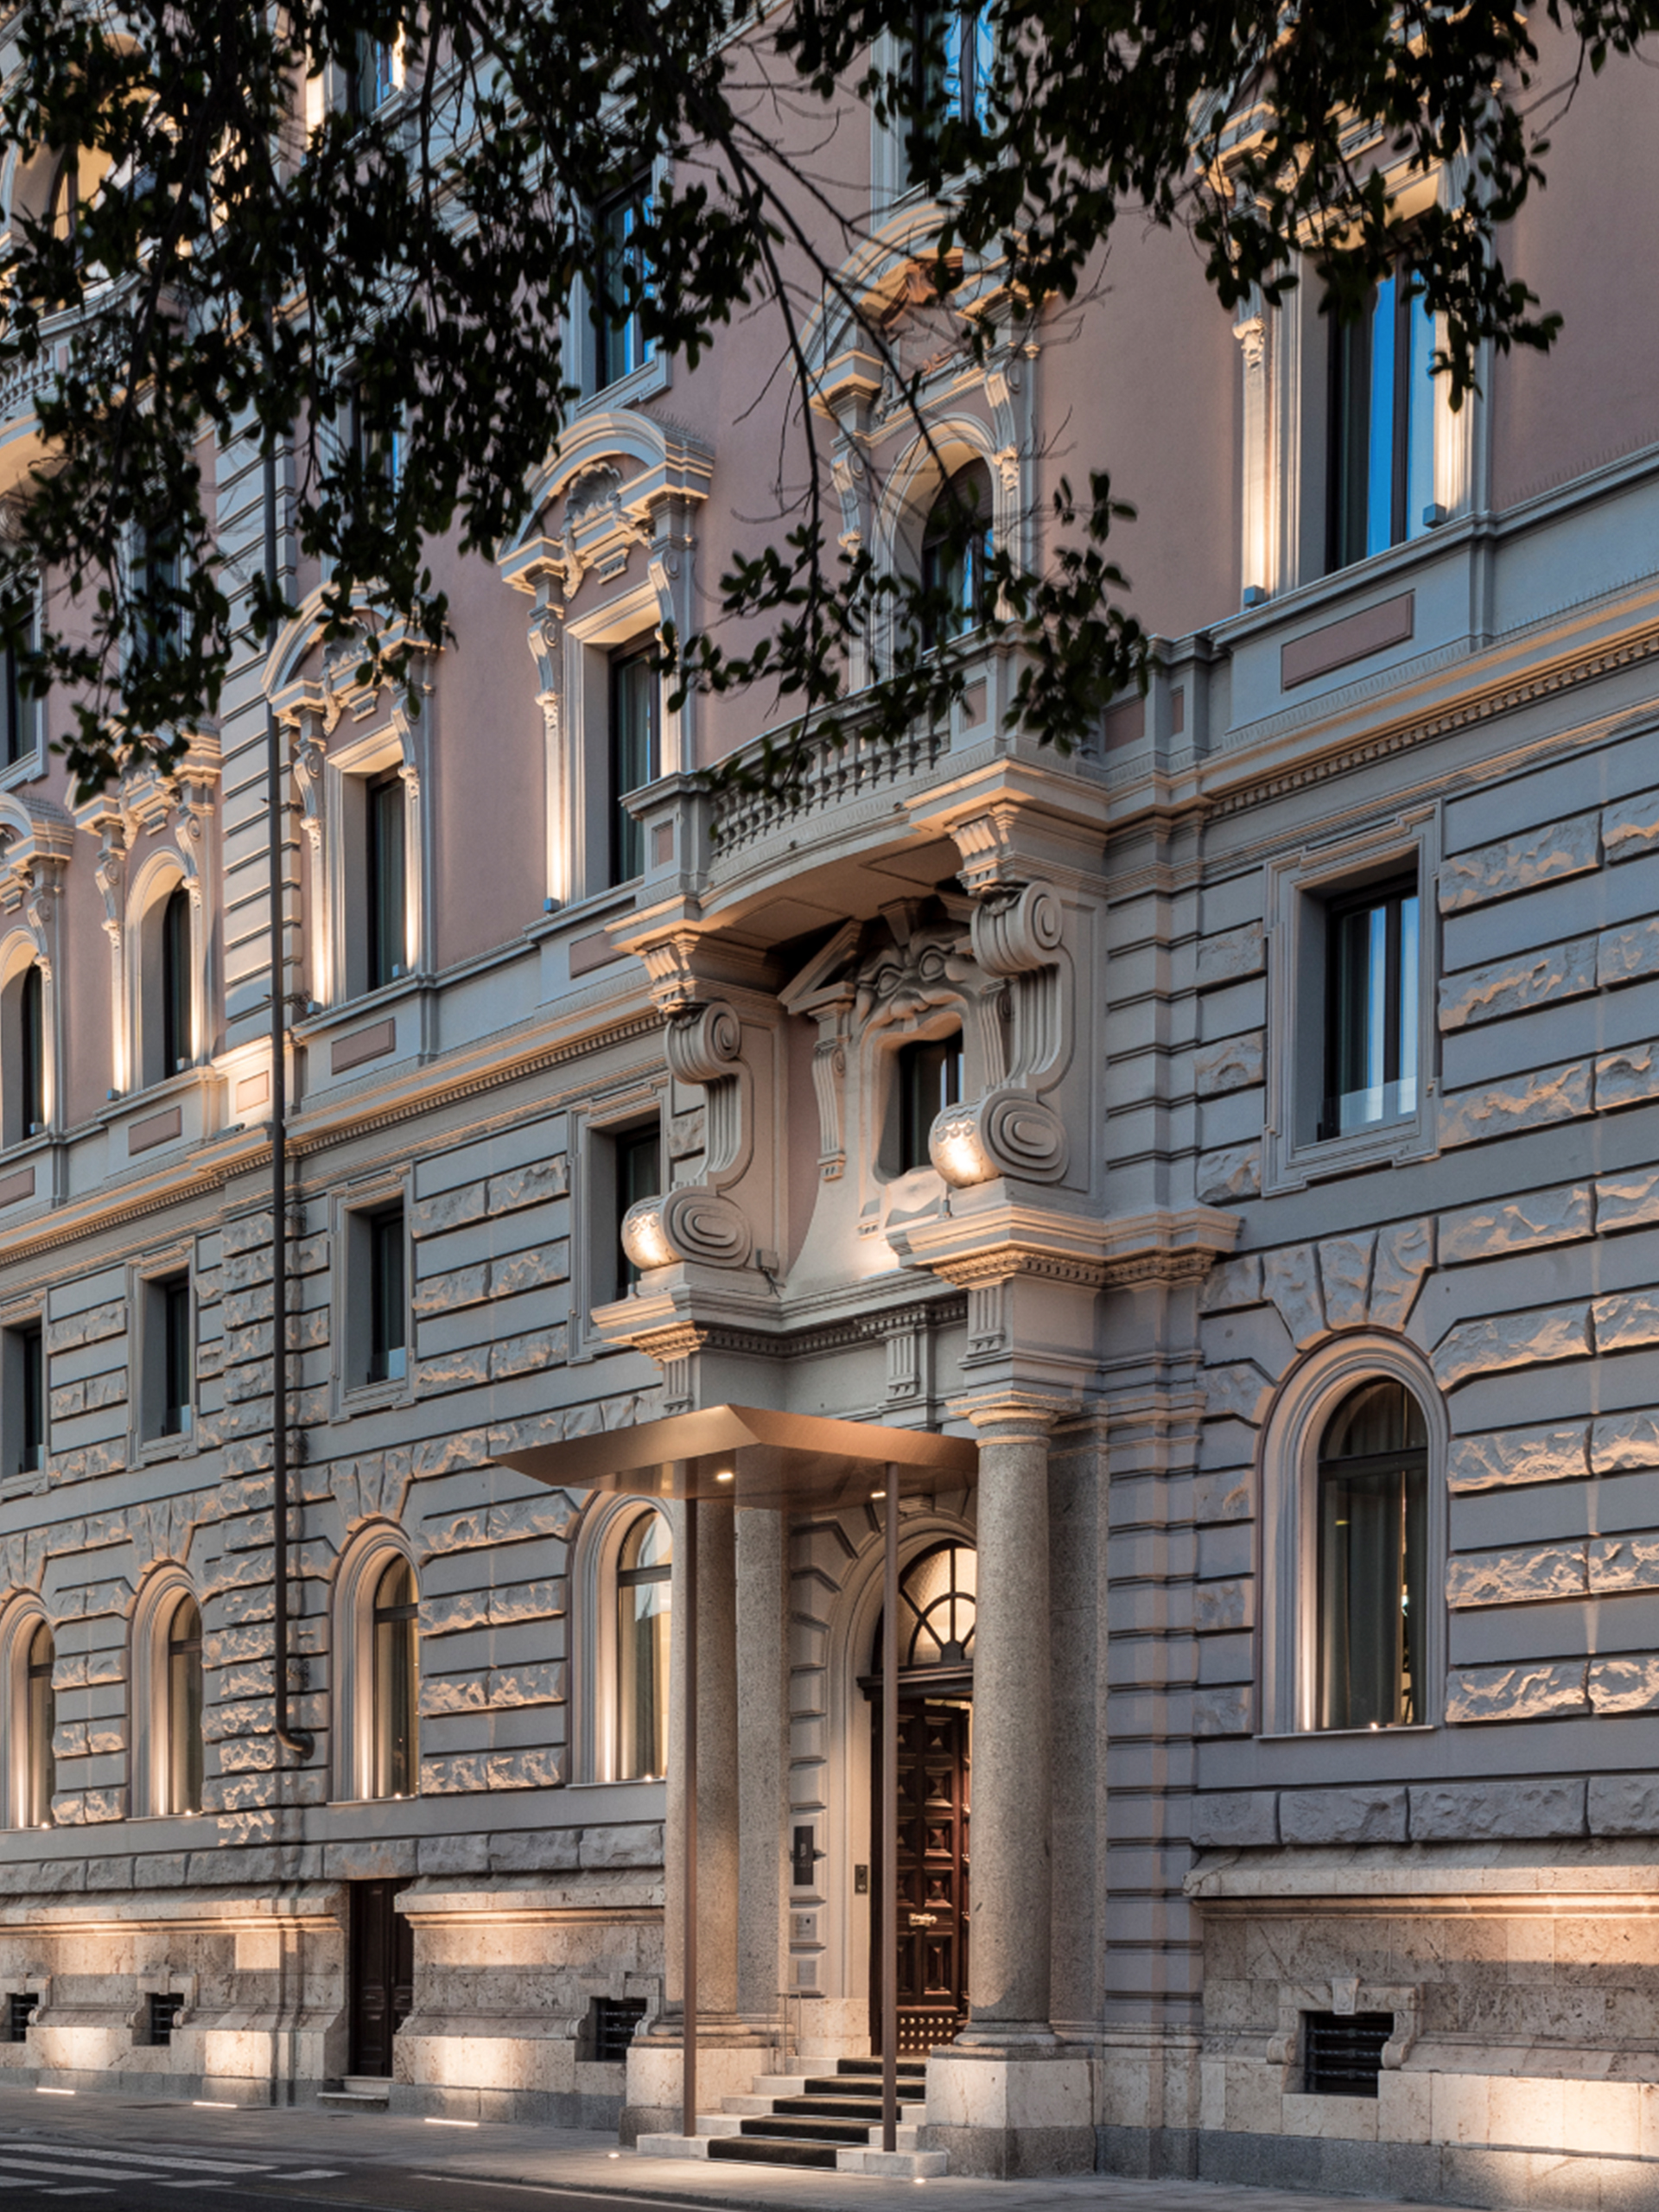 2. Dettagli della facciata di Palazzo Tirso Cagliari – MGallery Hotel Collection 5* - ph. © Studio Vetroblu